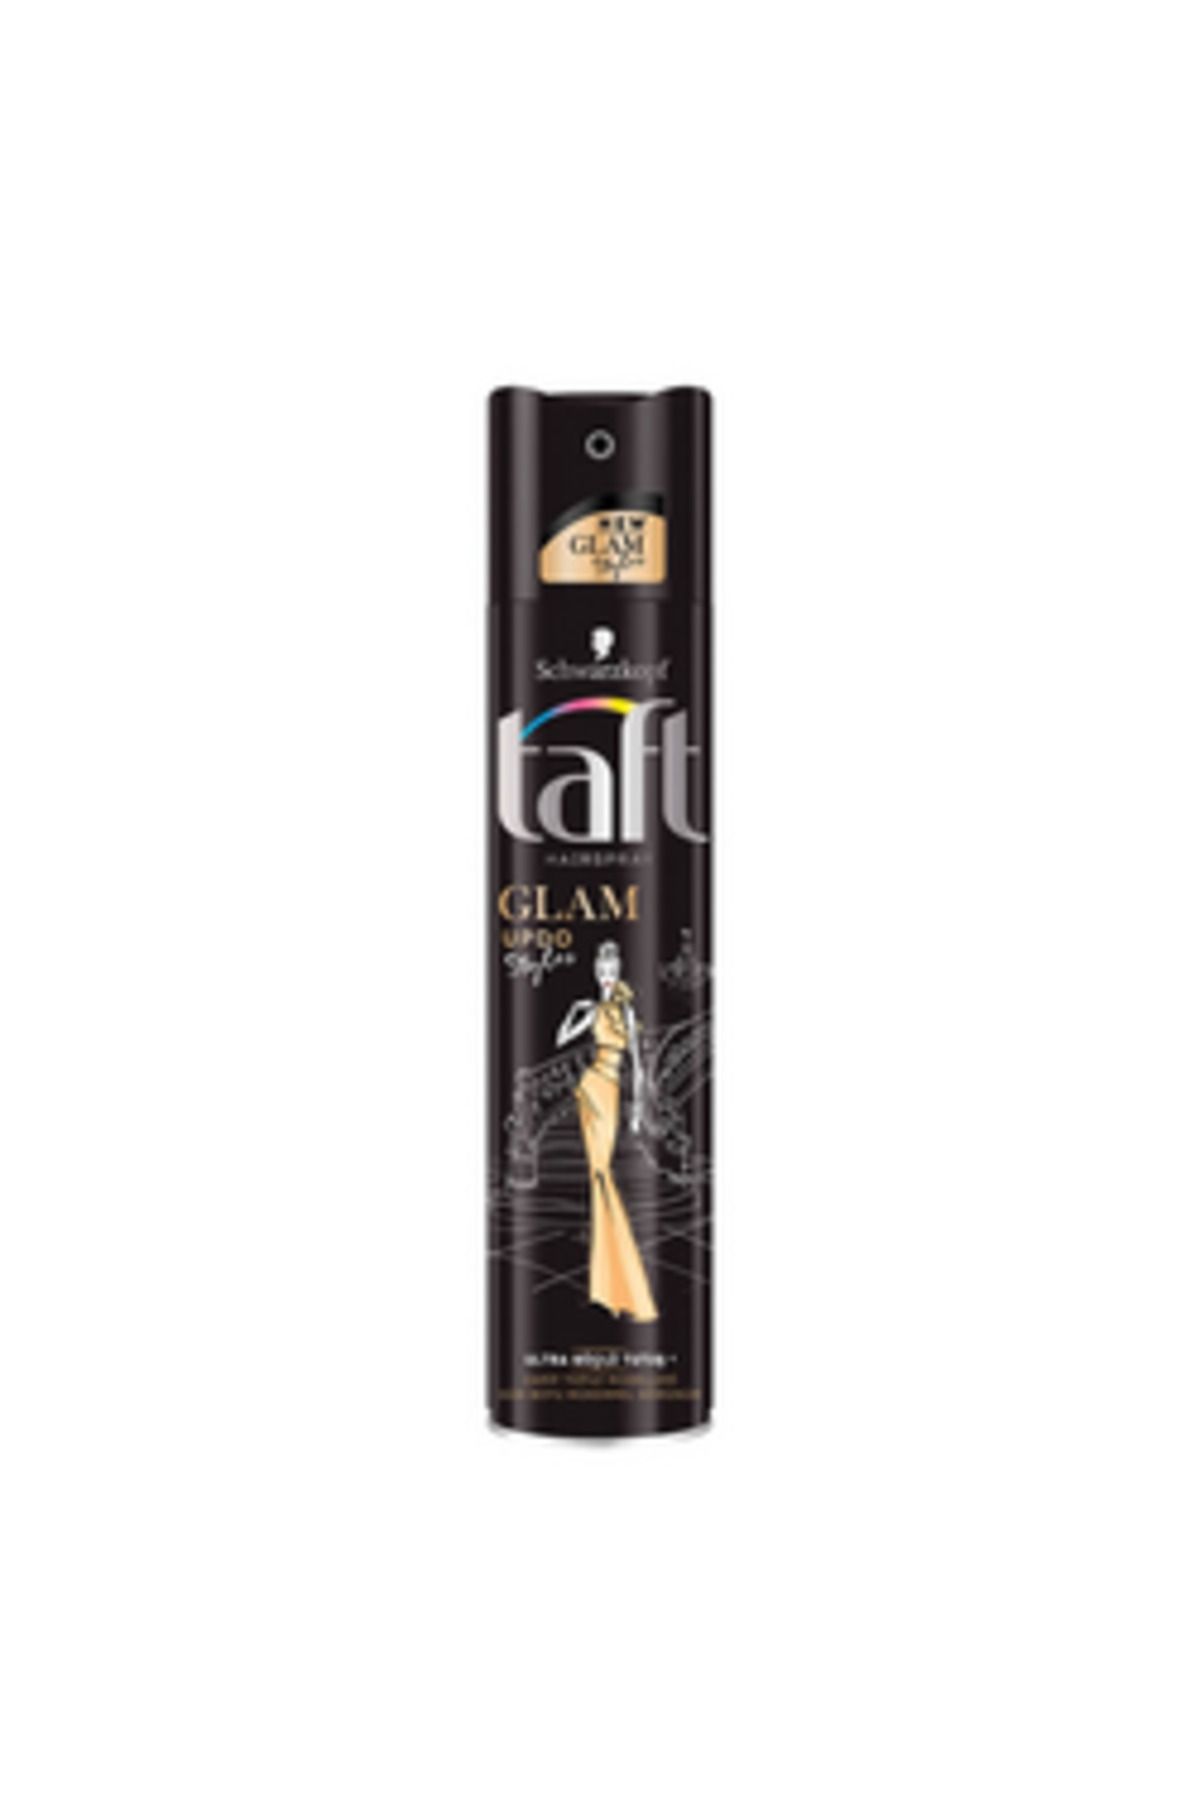 Taft ( 2 ADET ) Taft Glam Updo Styles Zarif Topuz Modelleri Saç Spreyi 250 Ml ( KÜÇÜK KOLONYA HEDİYE )